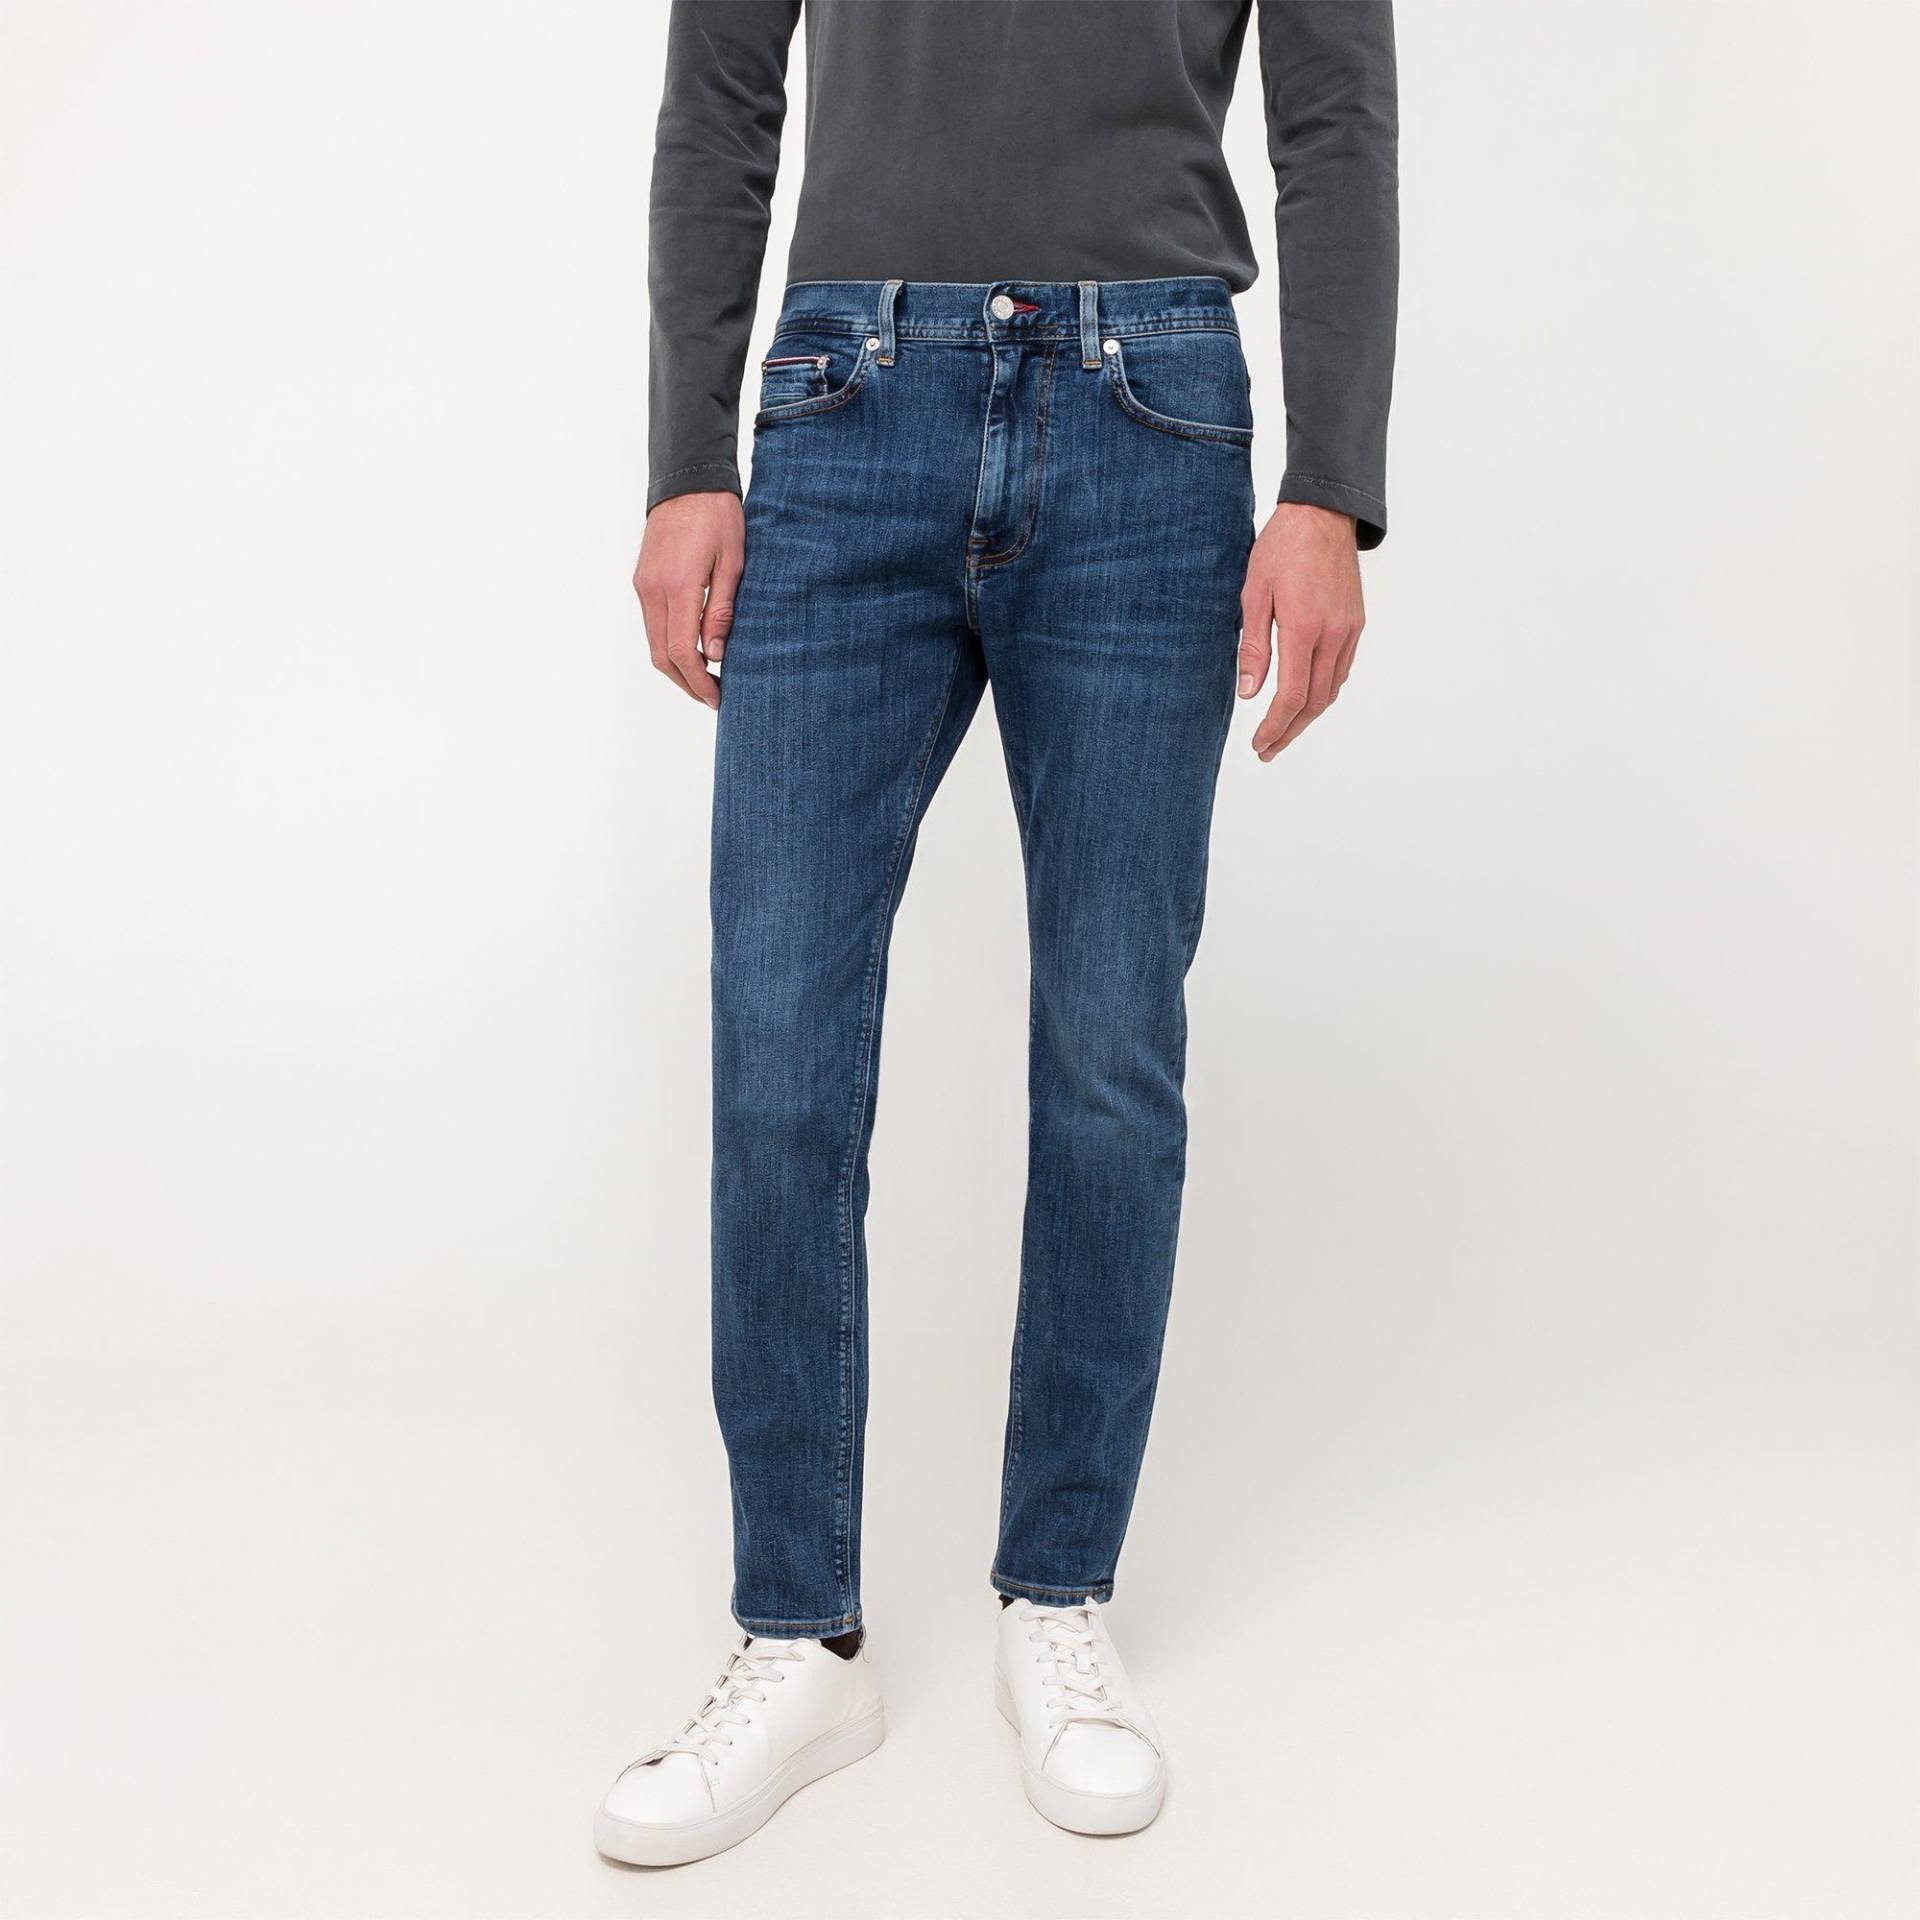 Jeans, Slim Fit Herren Blau  L32/W33 von TOMMY HILFIGER